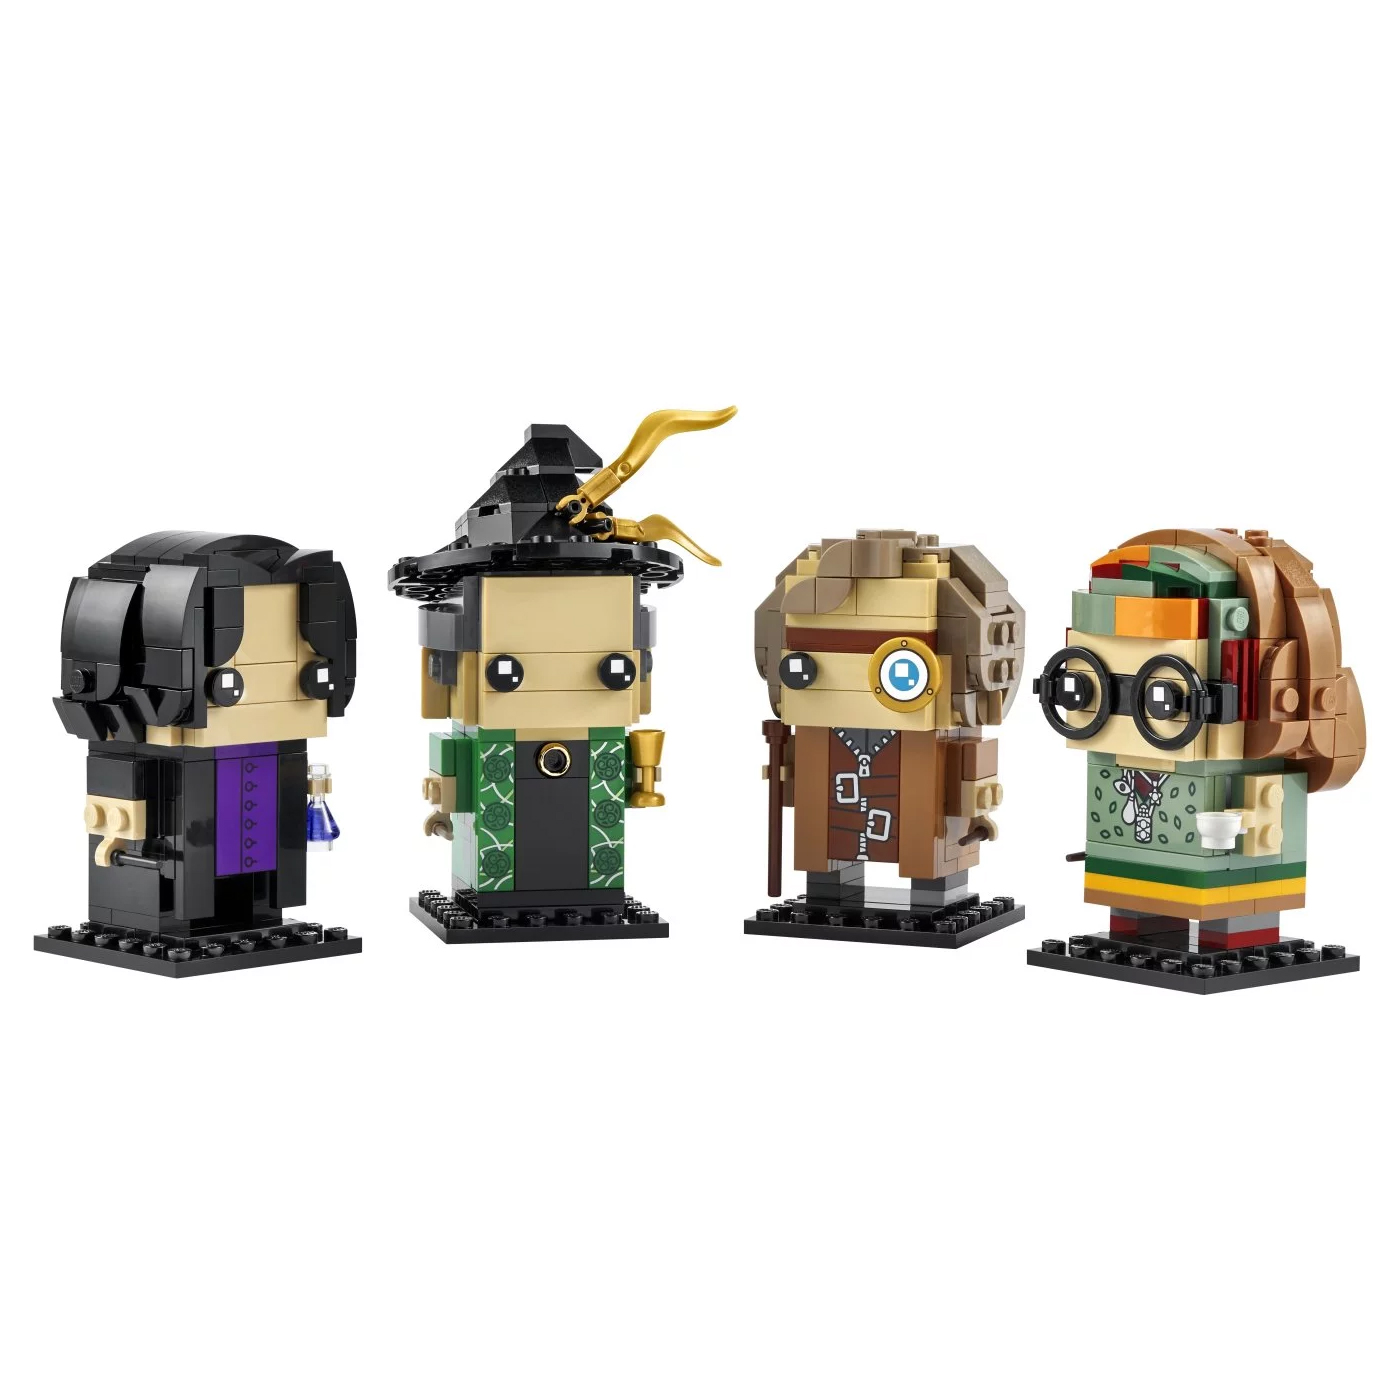 Конструктор Lego BrickHeadz Harry Potter Professors of Hogwarts 40560, 601 деталь конструктор lego brickheadz cruella